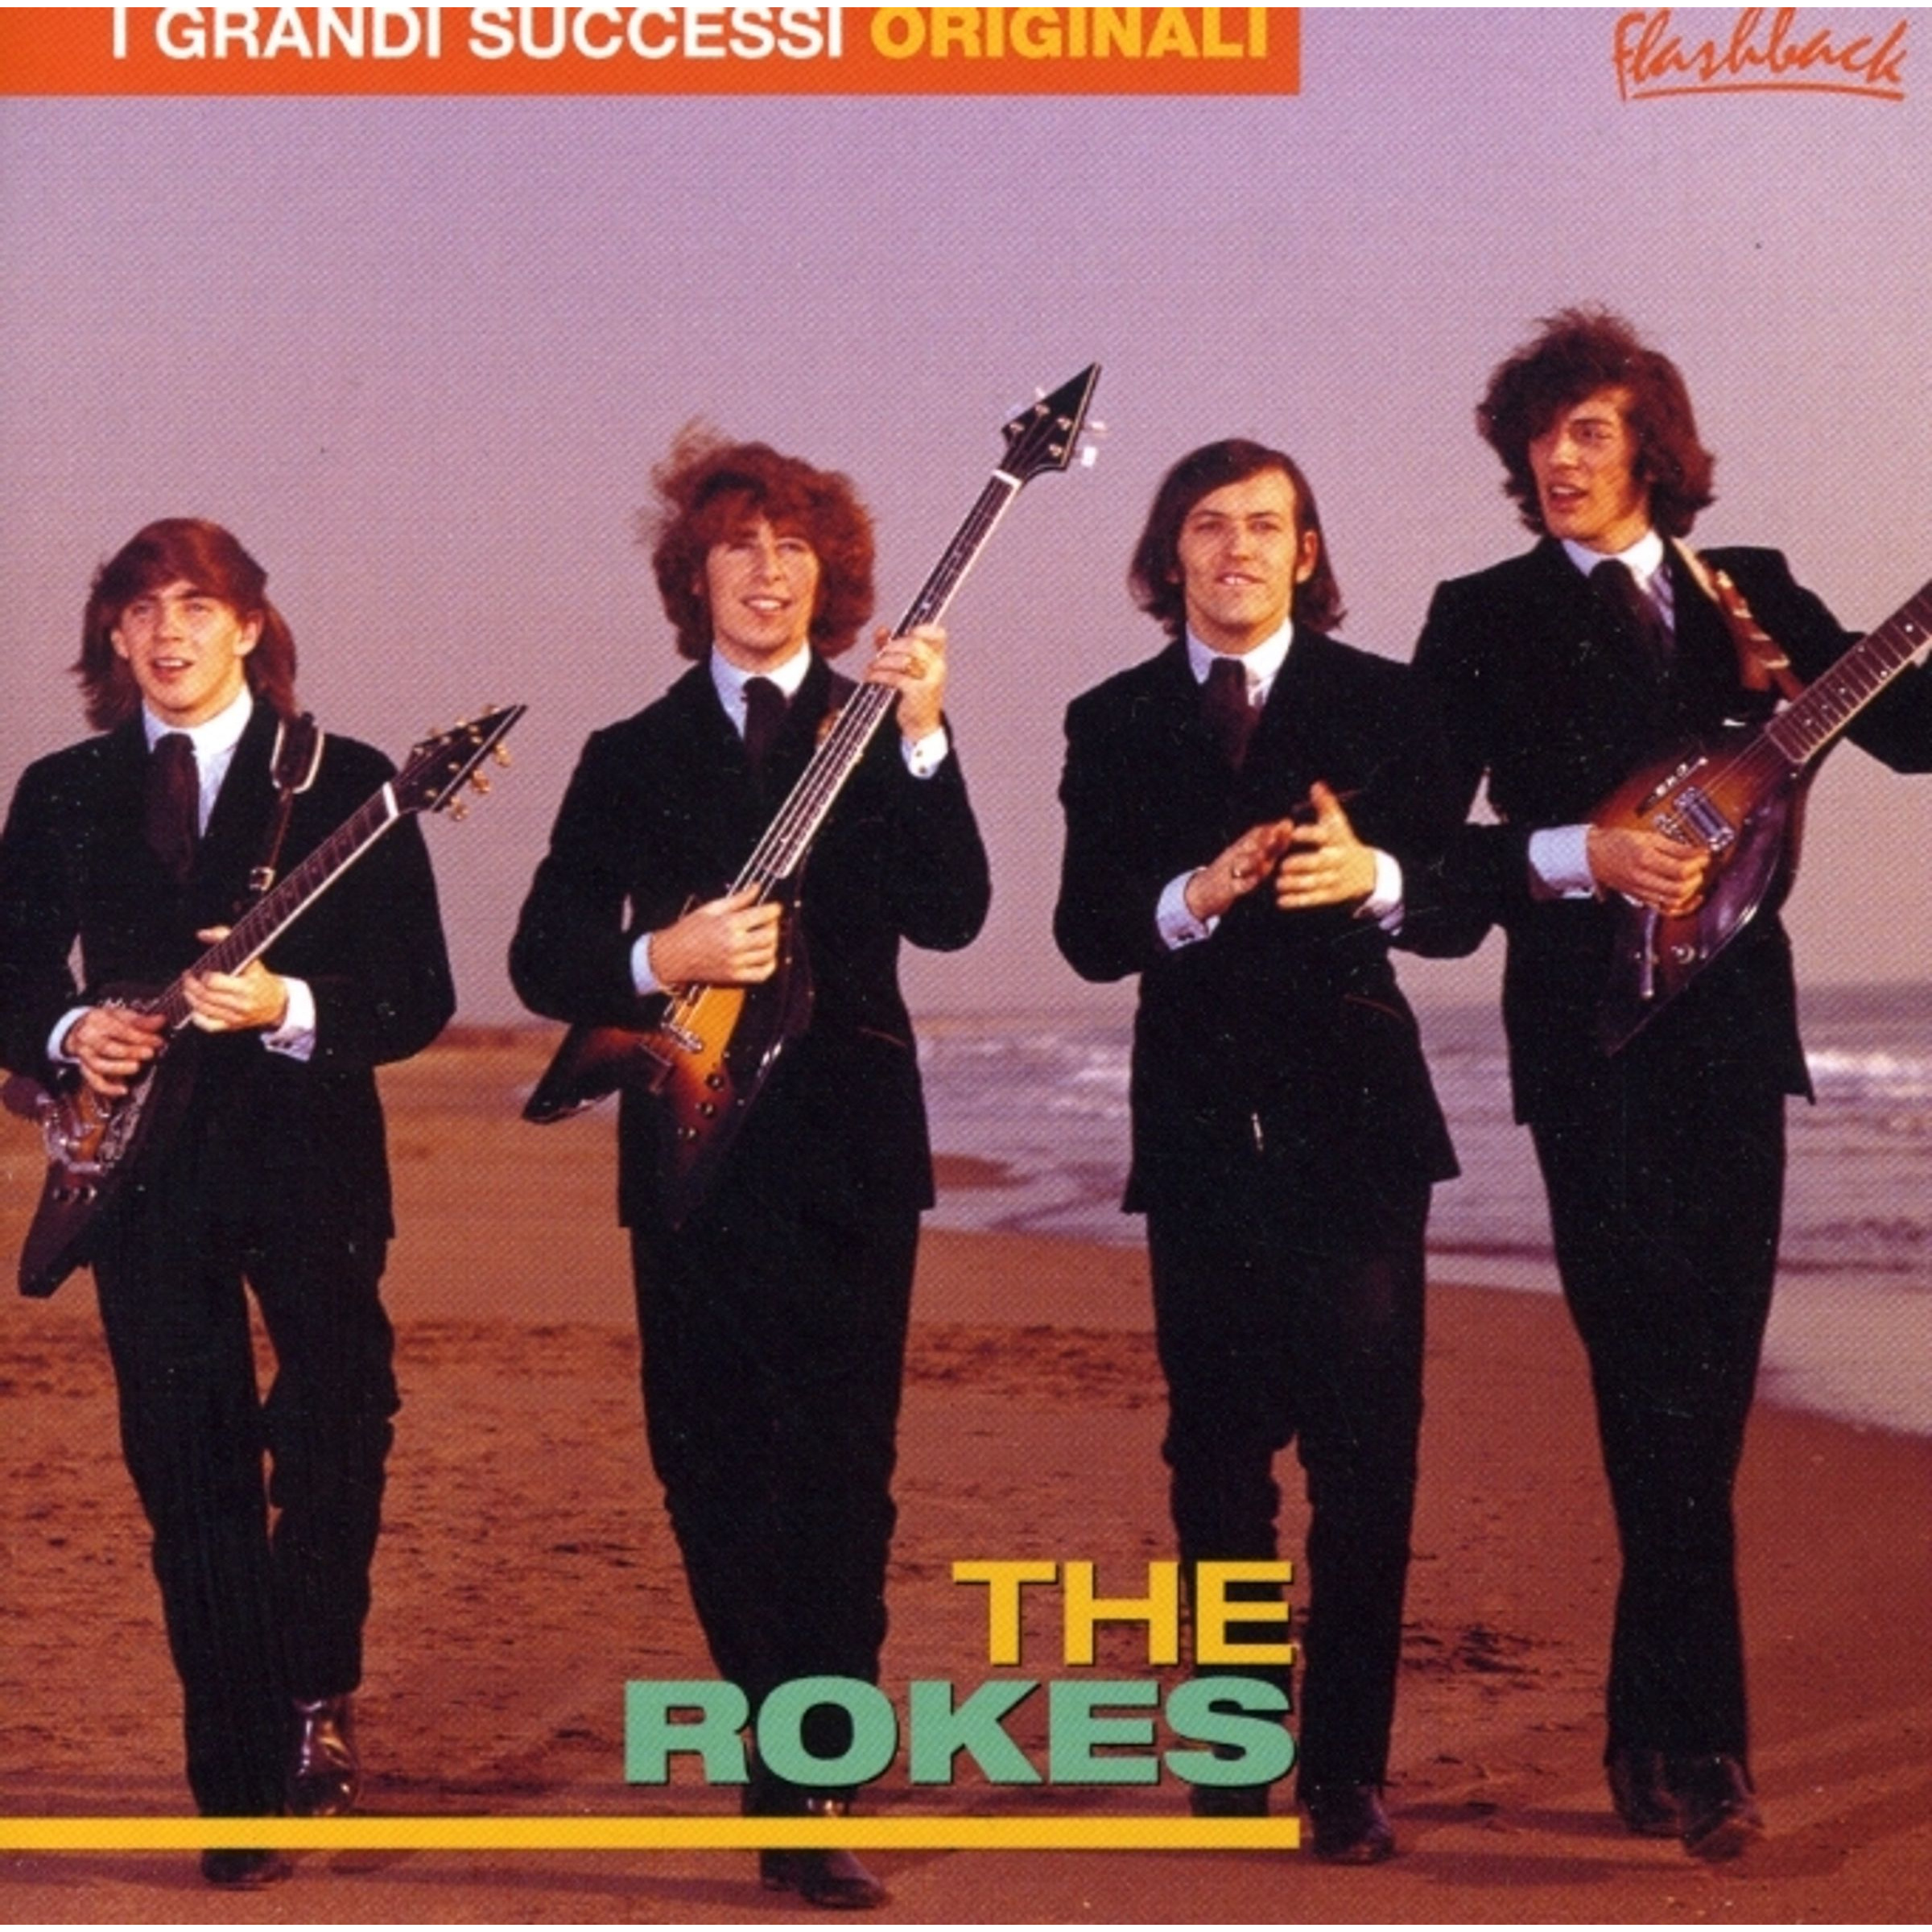 THE ROKES - I GRANDI SUCCESSI ORIGINALI